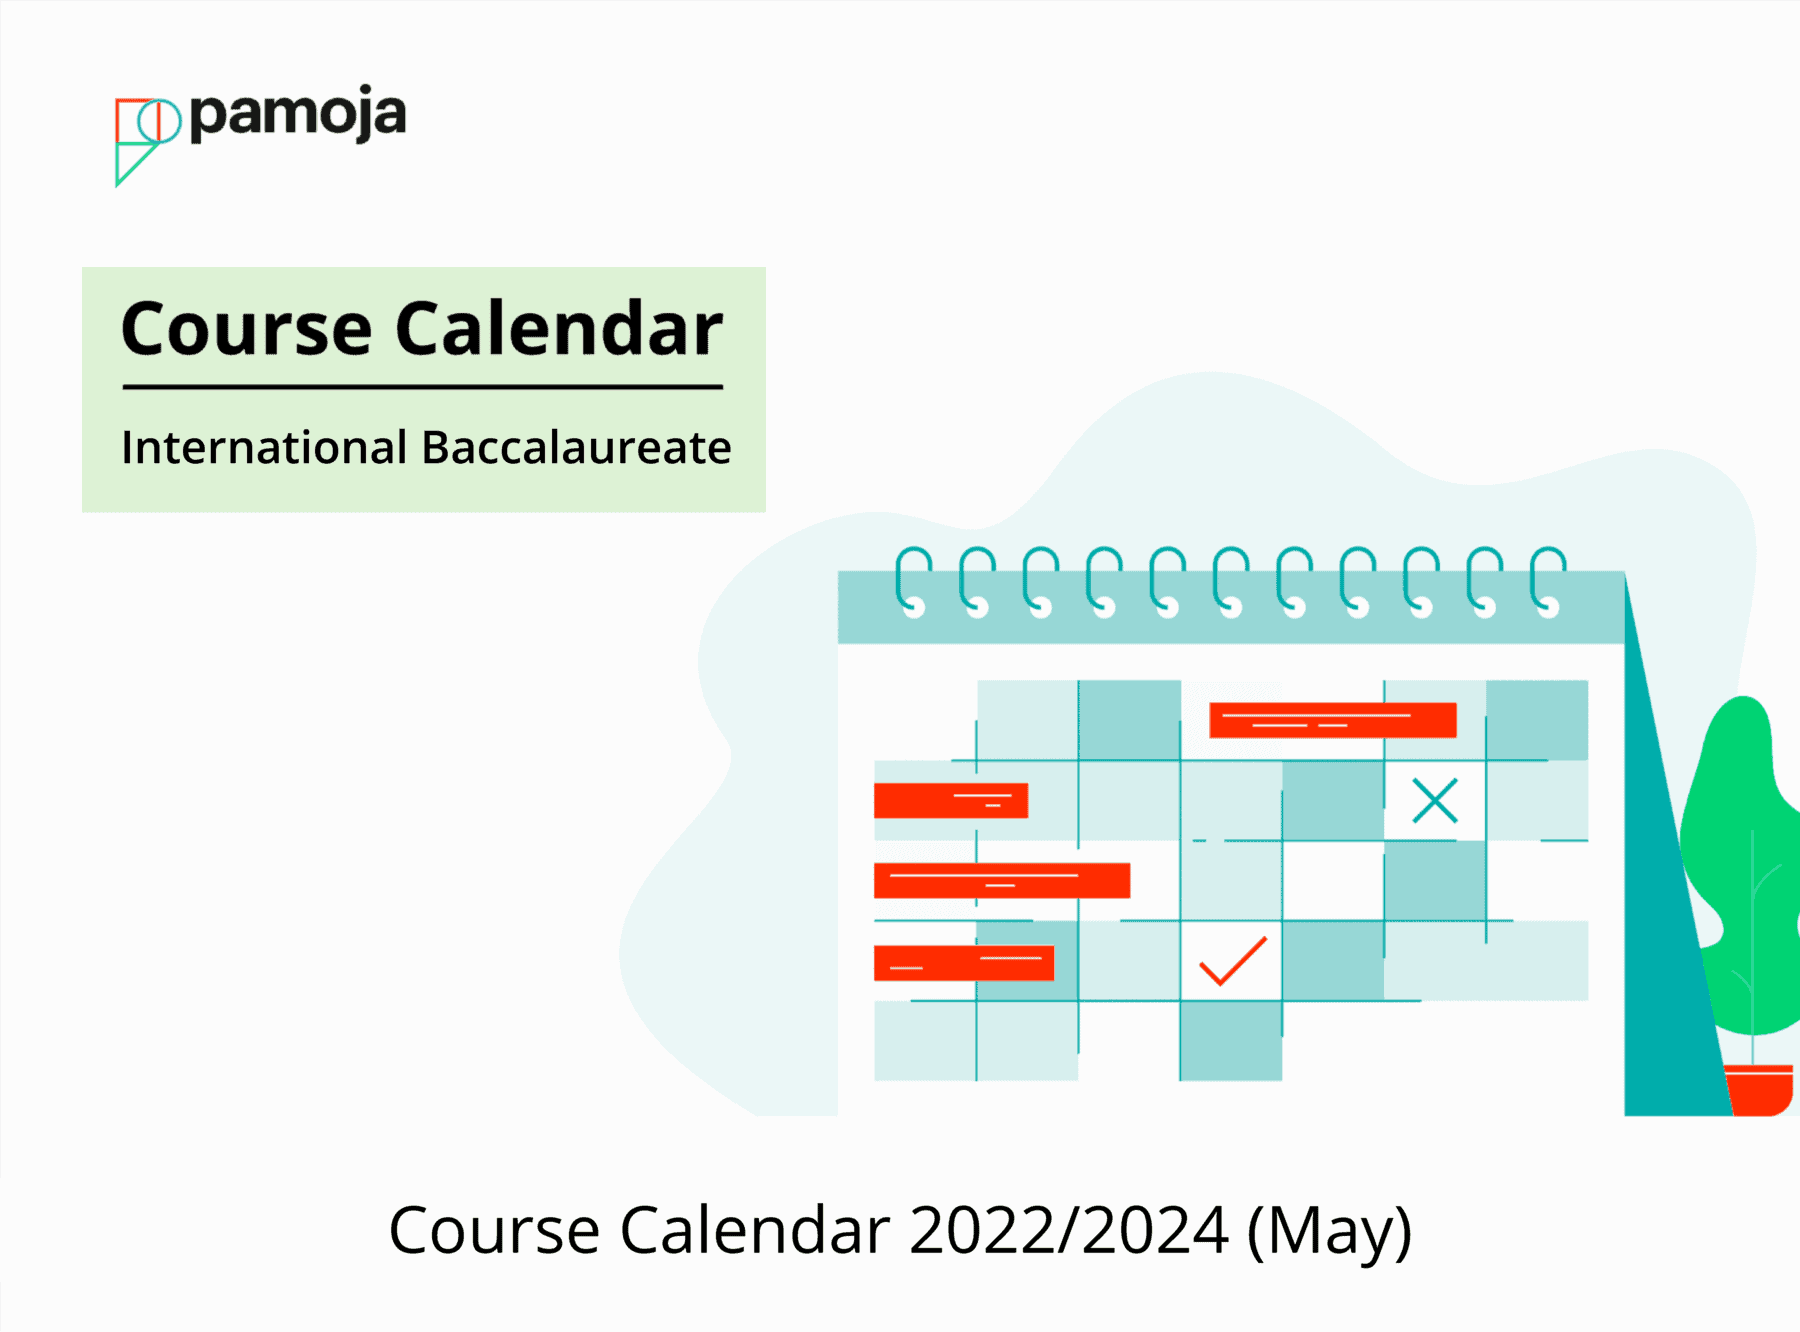 Course Calendar 2022/2024 (May)